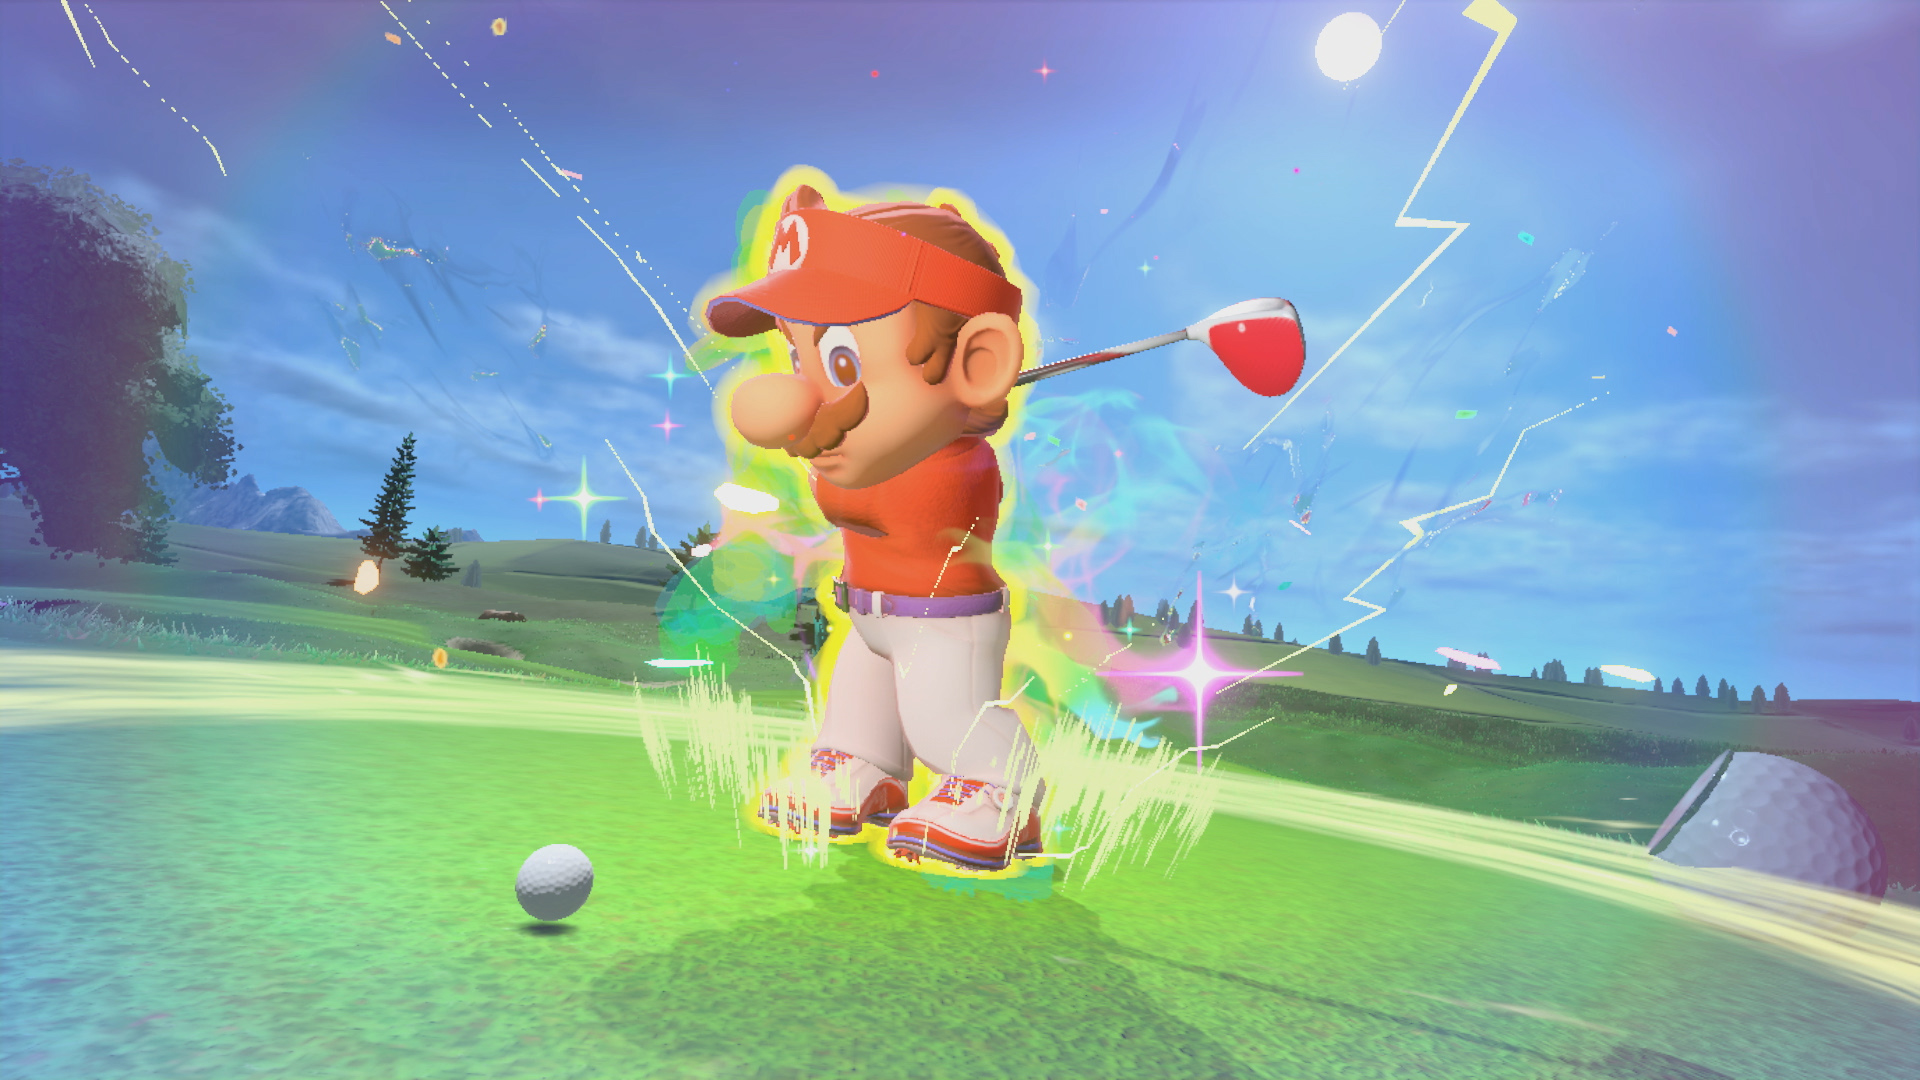 Nintendo demonstrē “Mario Golf: Super Rush” ātrai golfa un kaujas karaliskās spēles režīmam